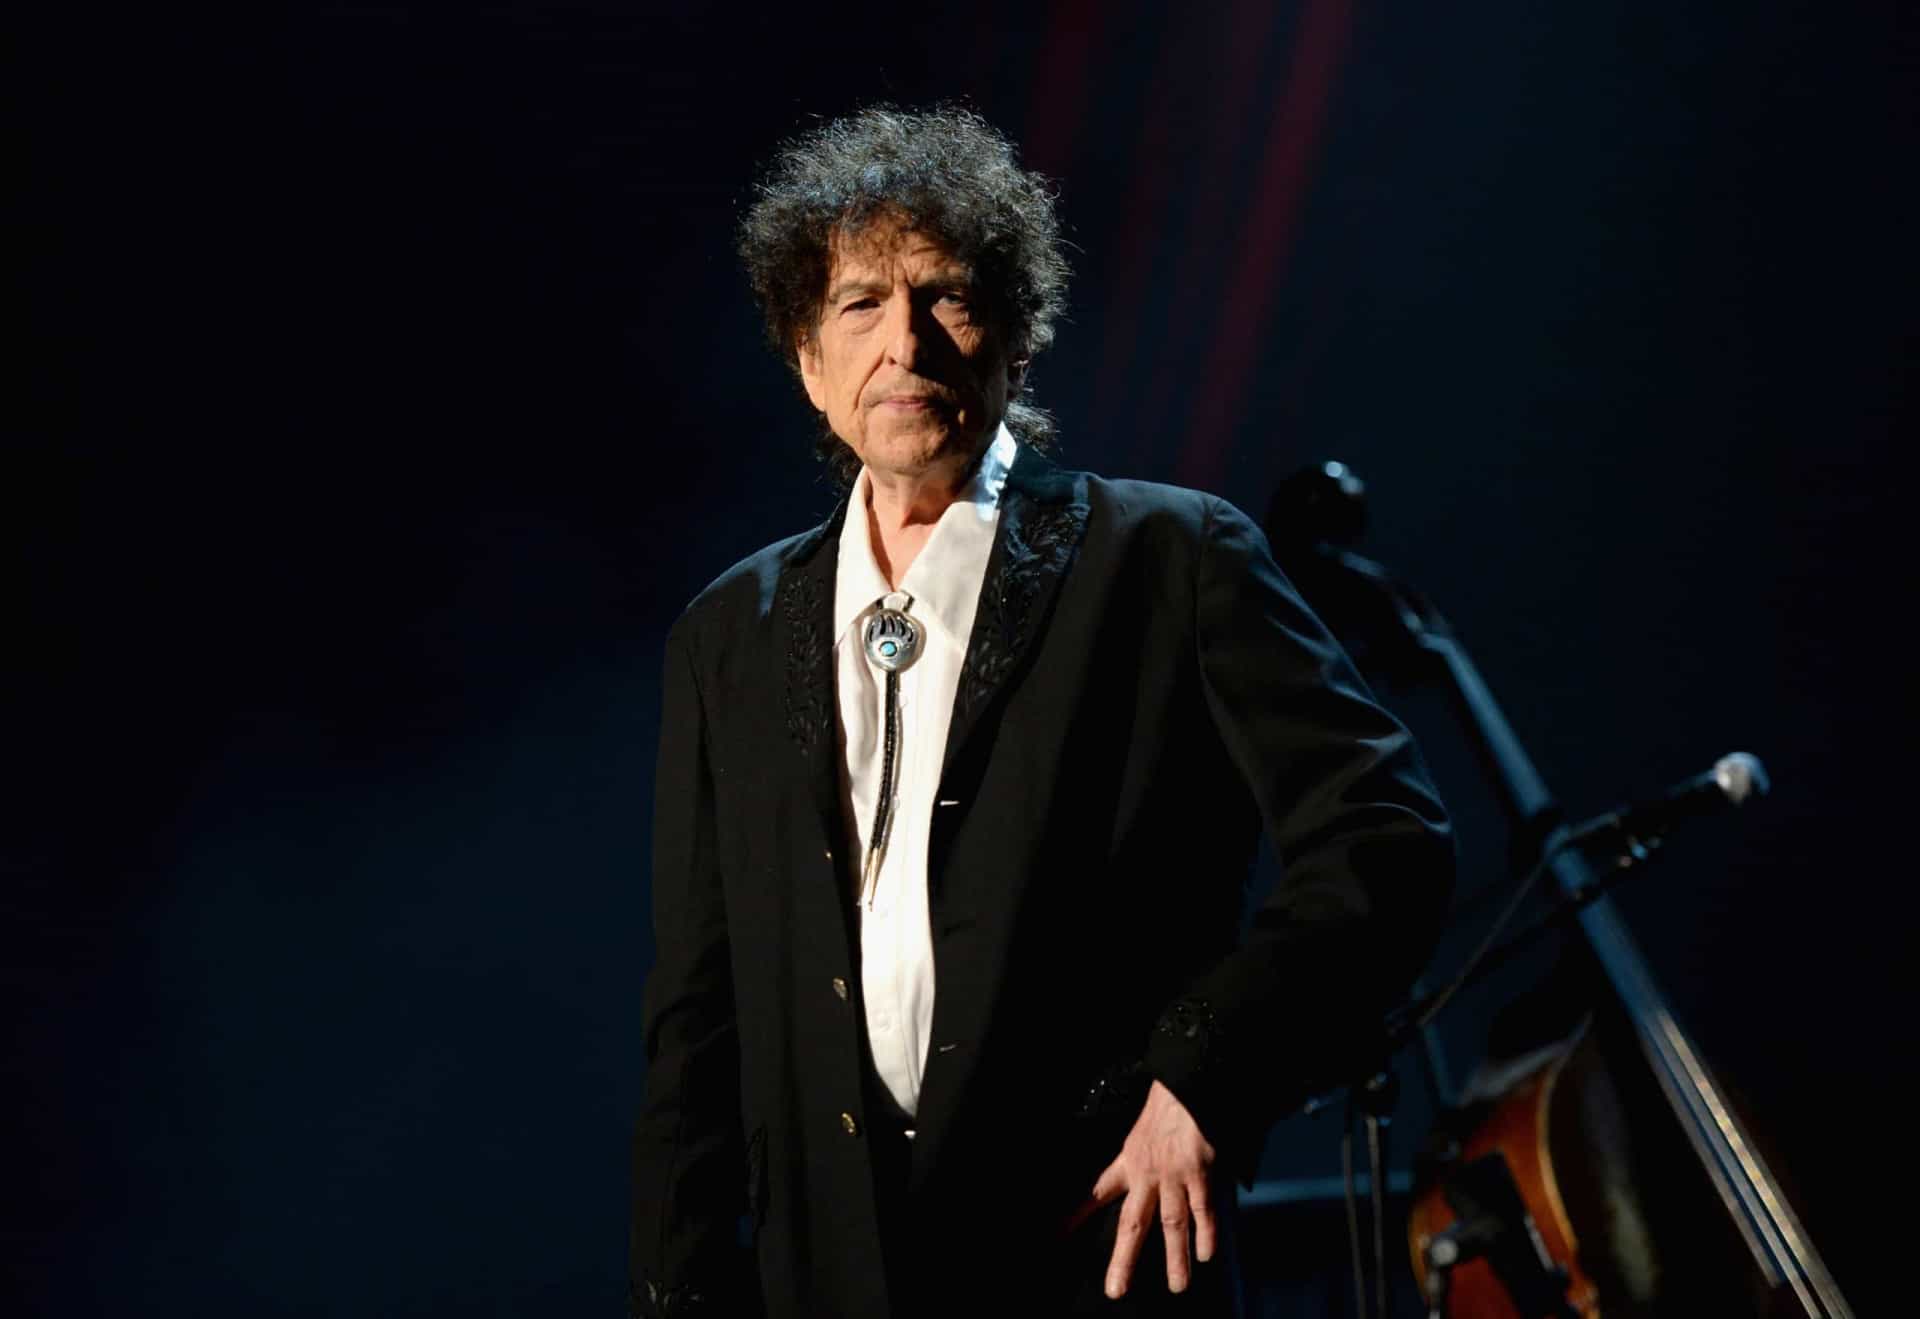 <p><a href="https://de.starsinsider.com/promis/365469/der-mann-hinter-dem-mythos-kaum-bekannte-fakten-ueber-bob-dylan" rel="noopener">Bob Dylan</a> wuchs in einem jüdischen Haushalt auf, doch in den späten 1970ern wurde er zum Christen.</p>